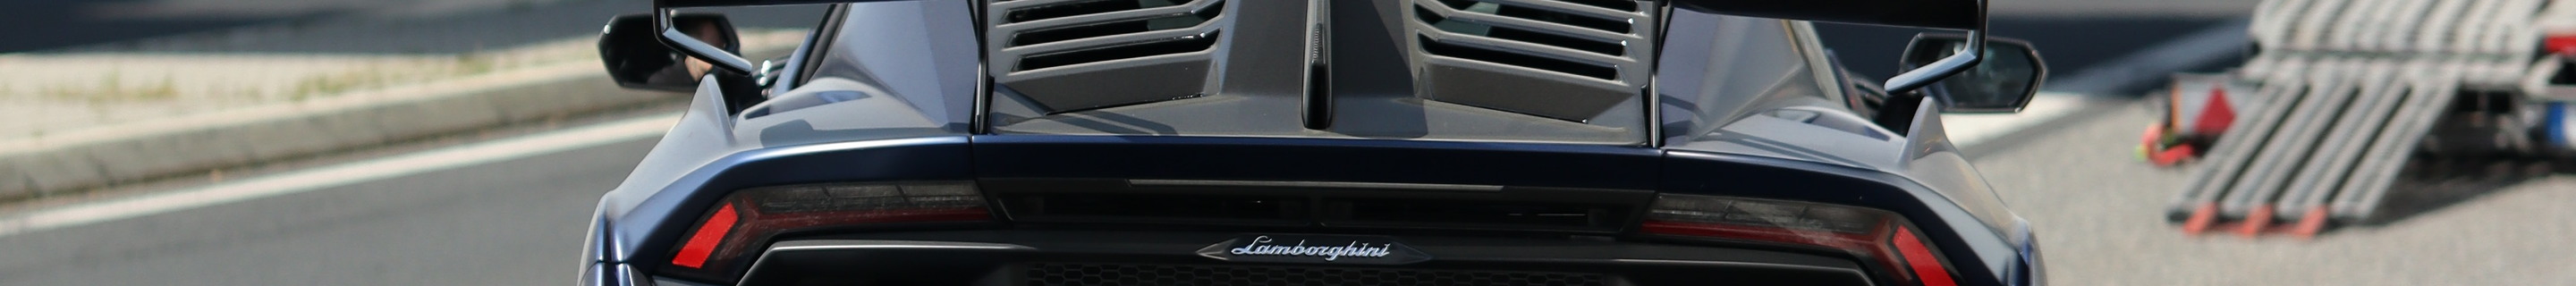 Lamborghini Huracán LP640-2 STO